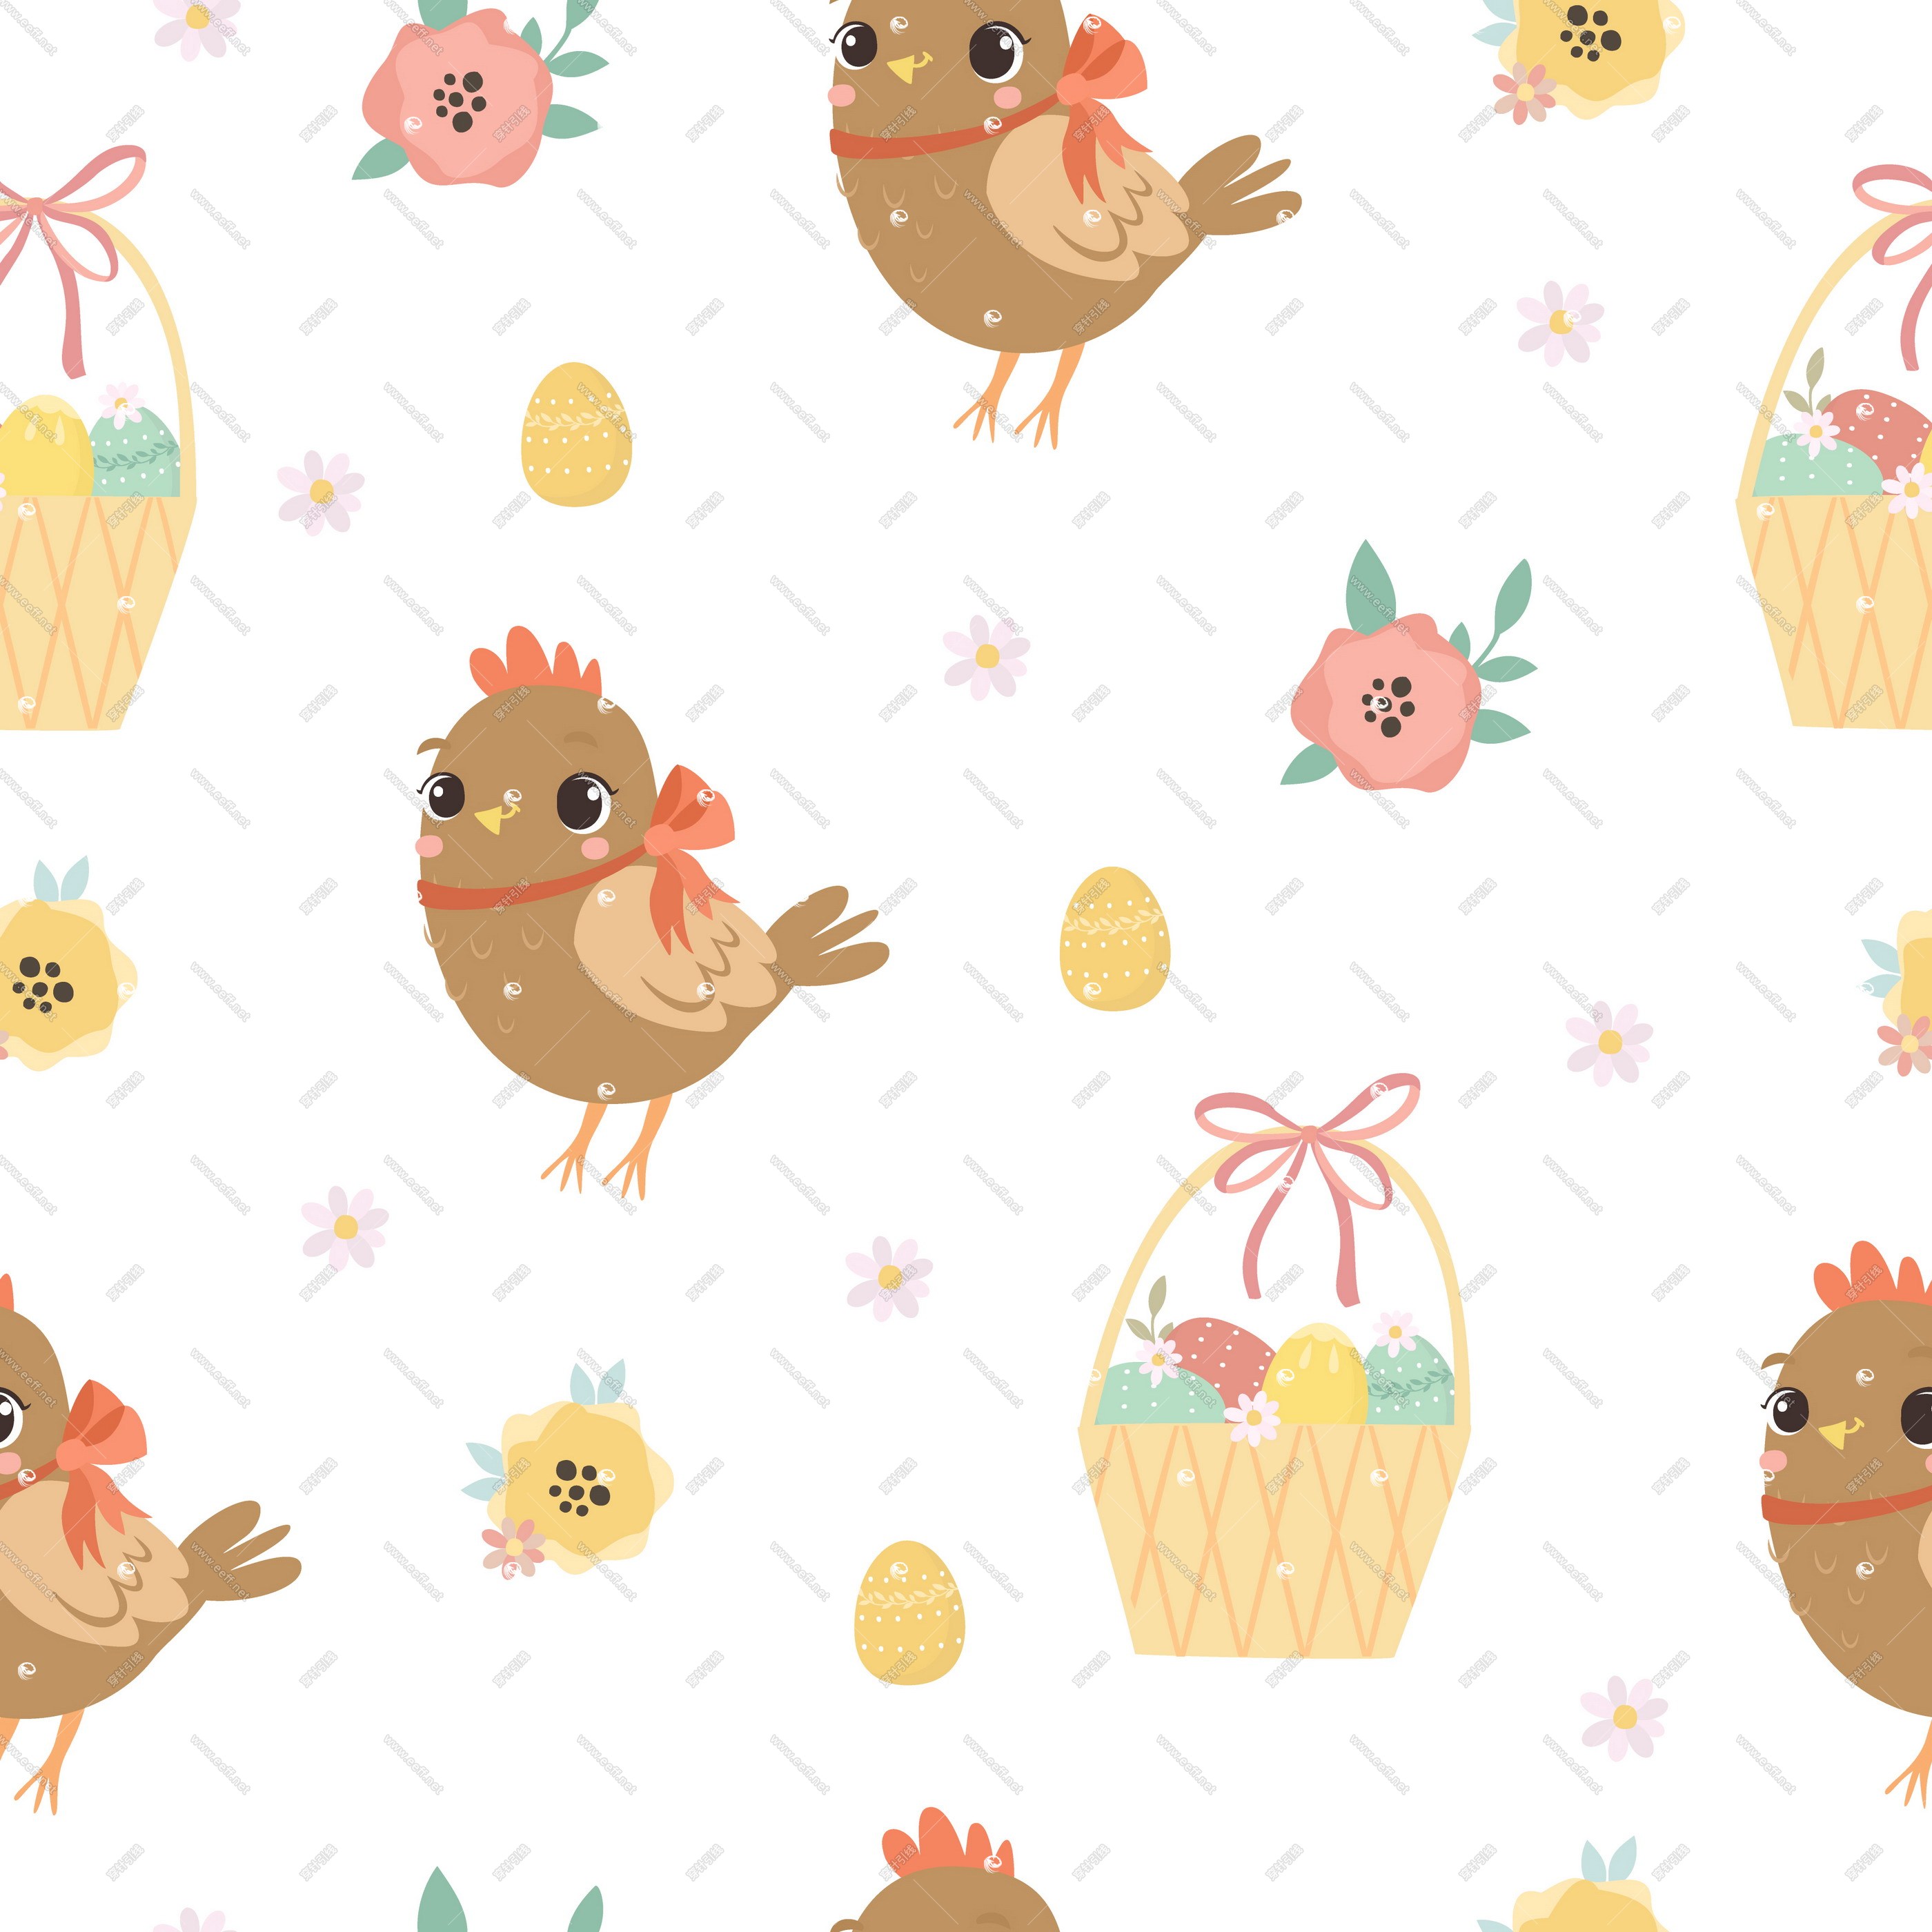 chicken_and_basket_pattern-1